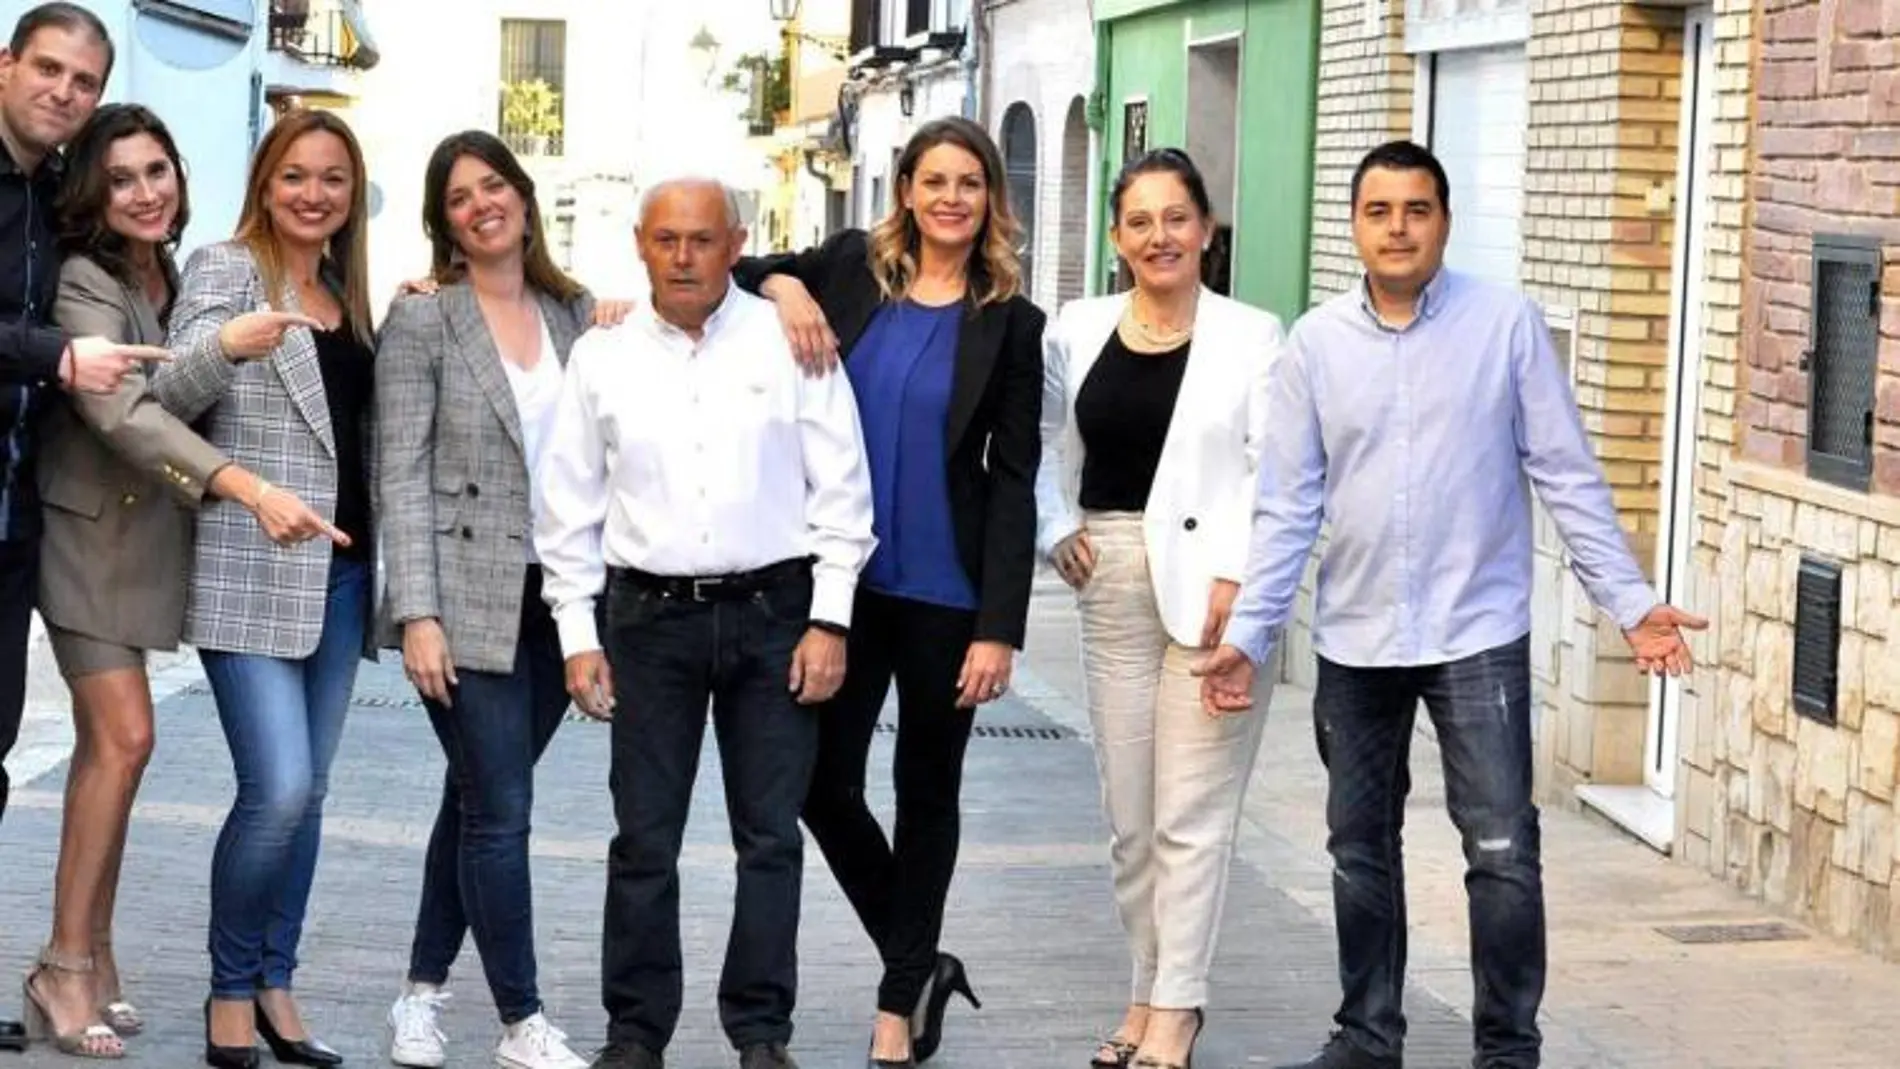 El entonces candidato del Partido Popular a alcalde de Rocafort Agustín Aliaga, junto a algunos miembros de su candidatura durante la campaña